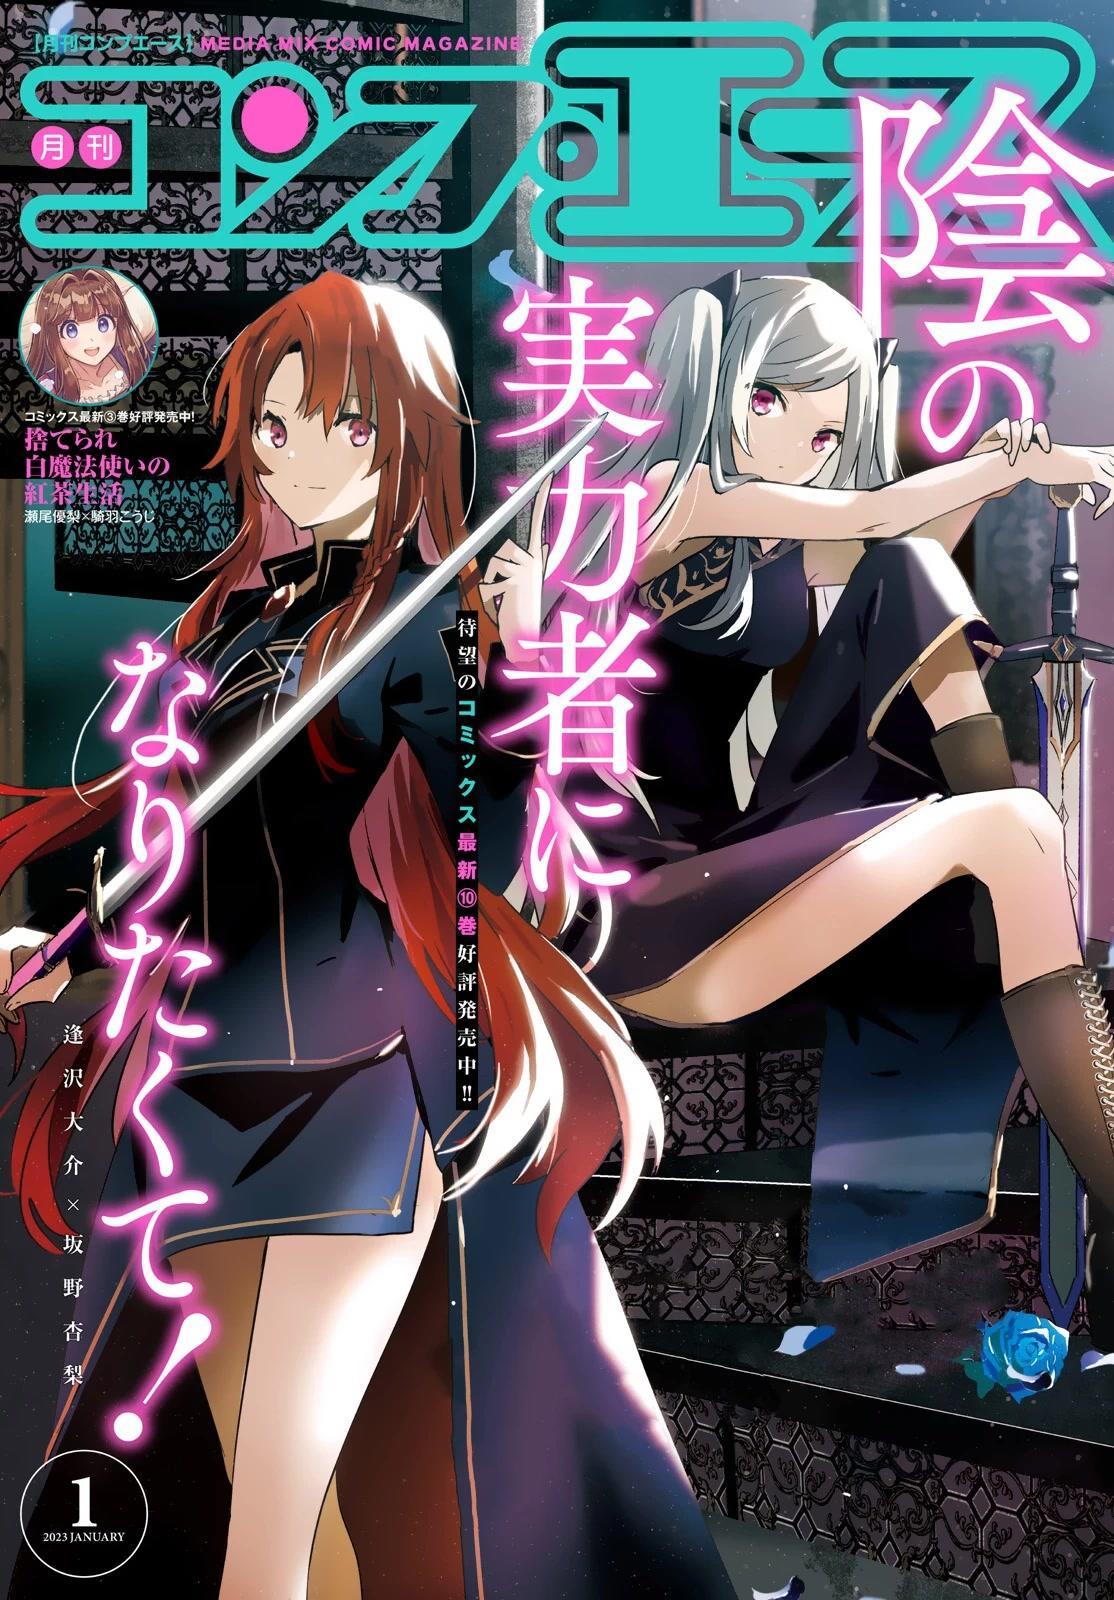 Kage no jitsuryokusha ni naritakute Shadow gaiden 5 comic manga Anime Book